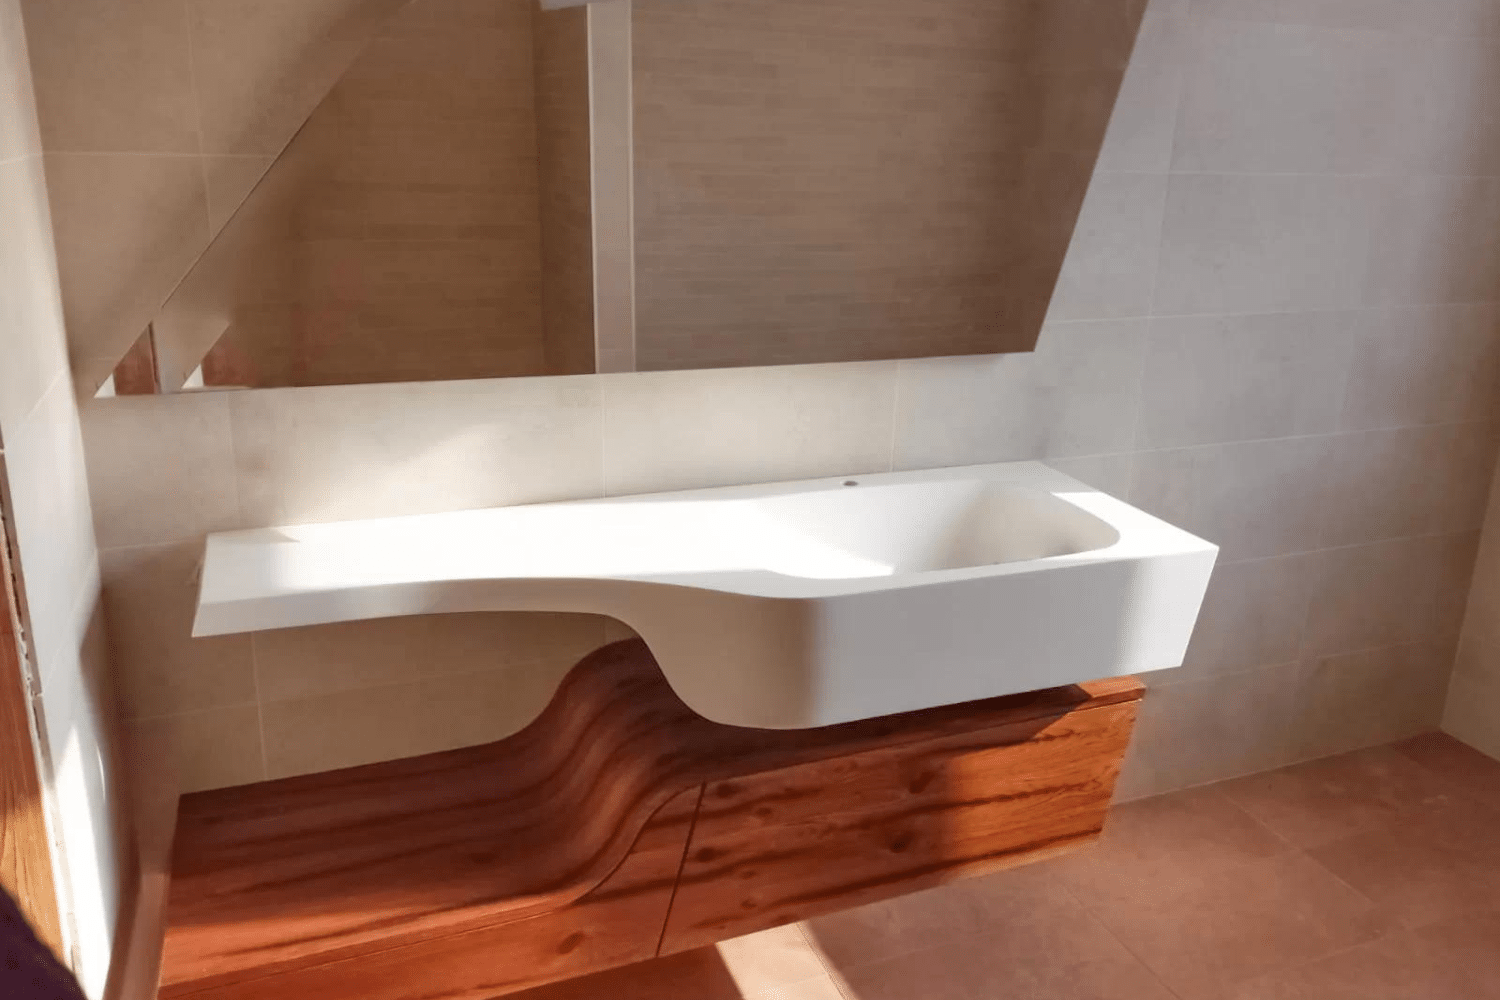 Lavabo in Corian: una scelta popolare per il bagno